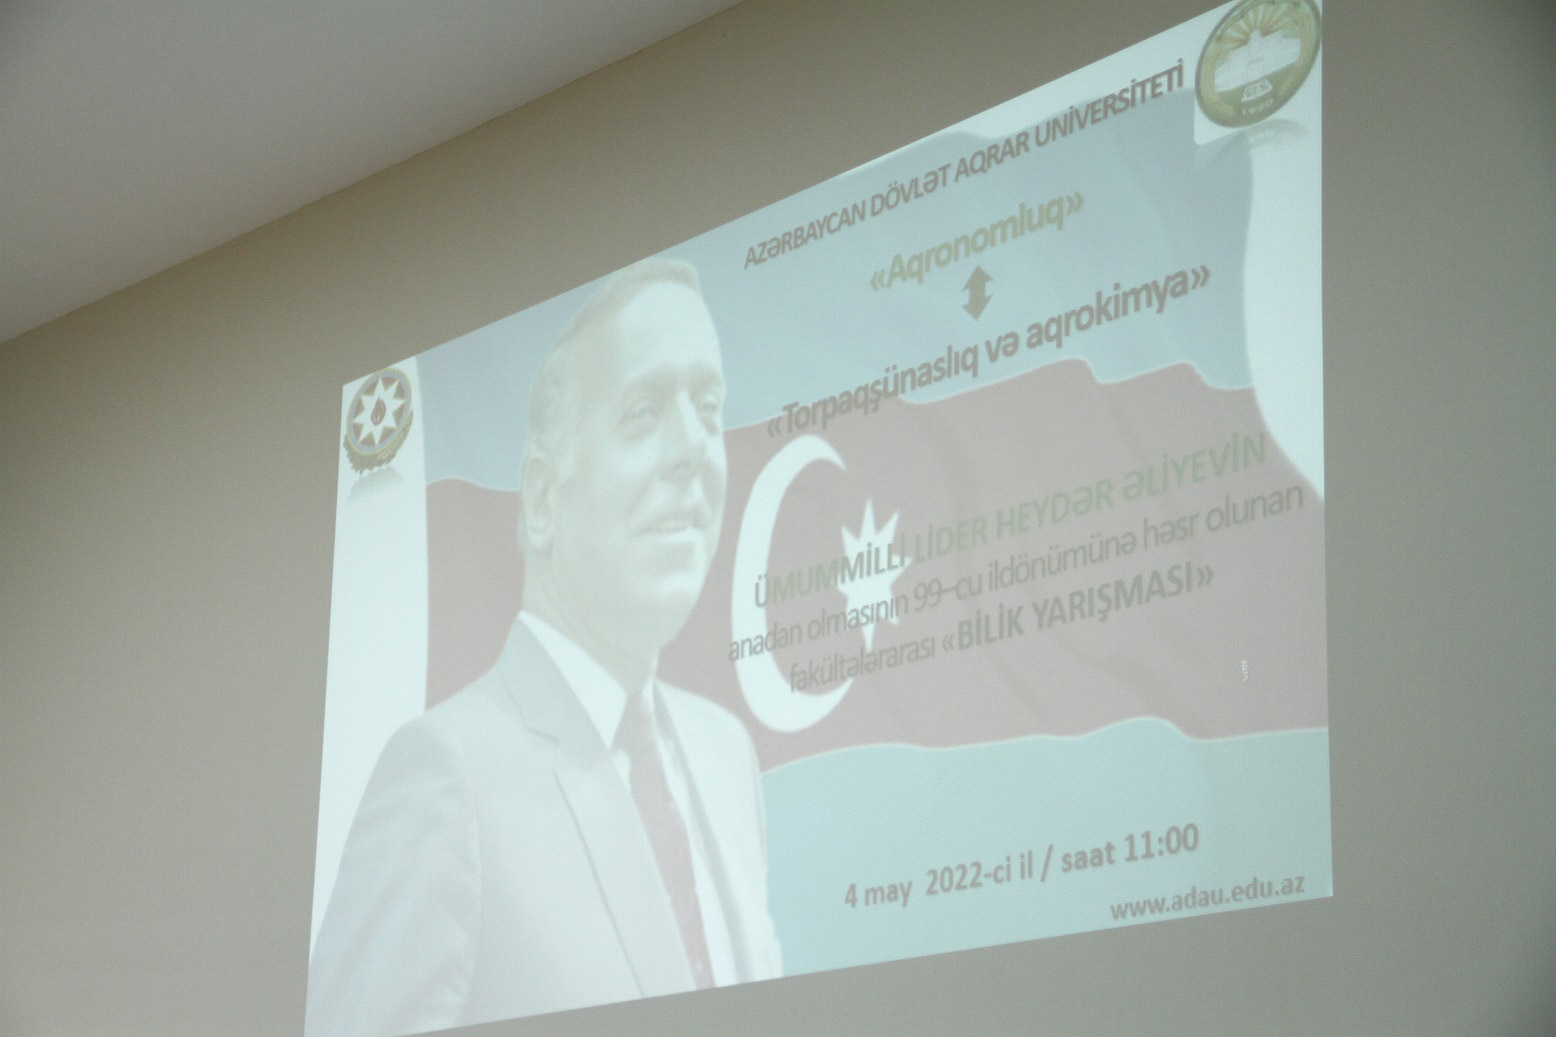 Azərbaycan Dövlət Aqrar Universitetində silsilə tədbirlər davam edir - ÖZƏL